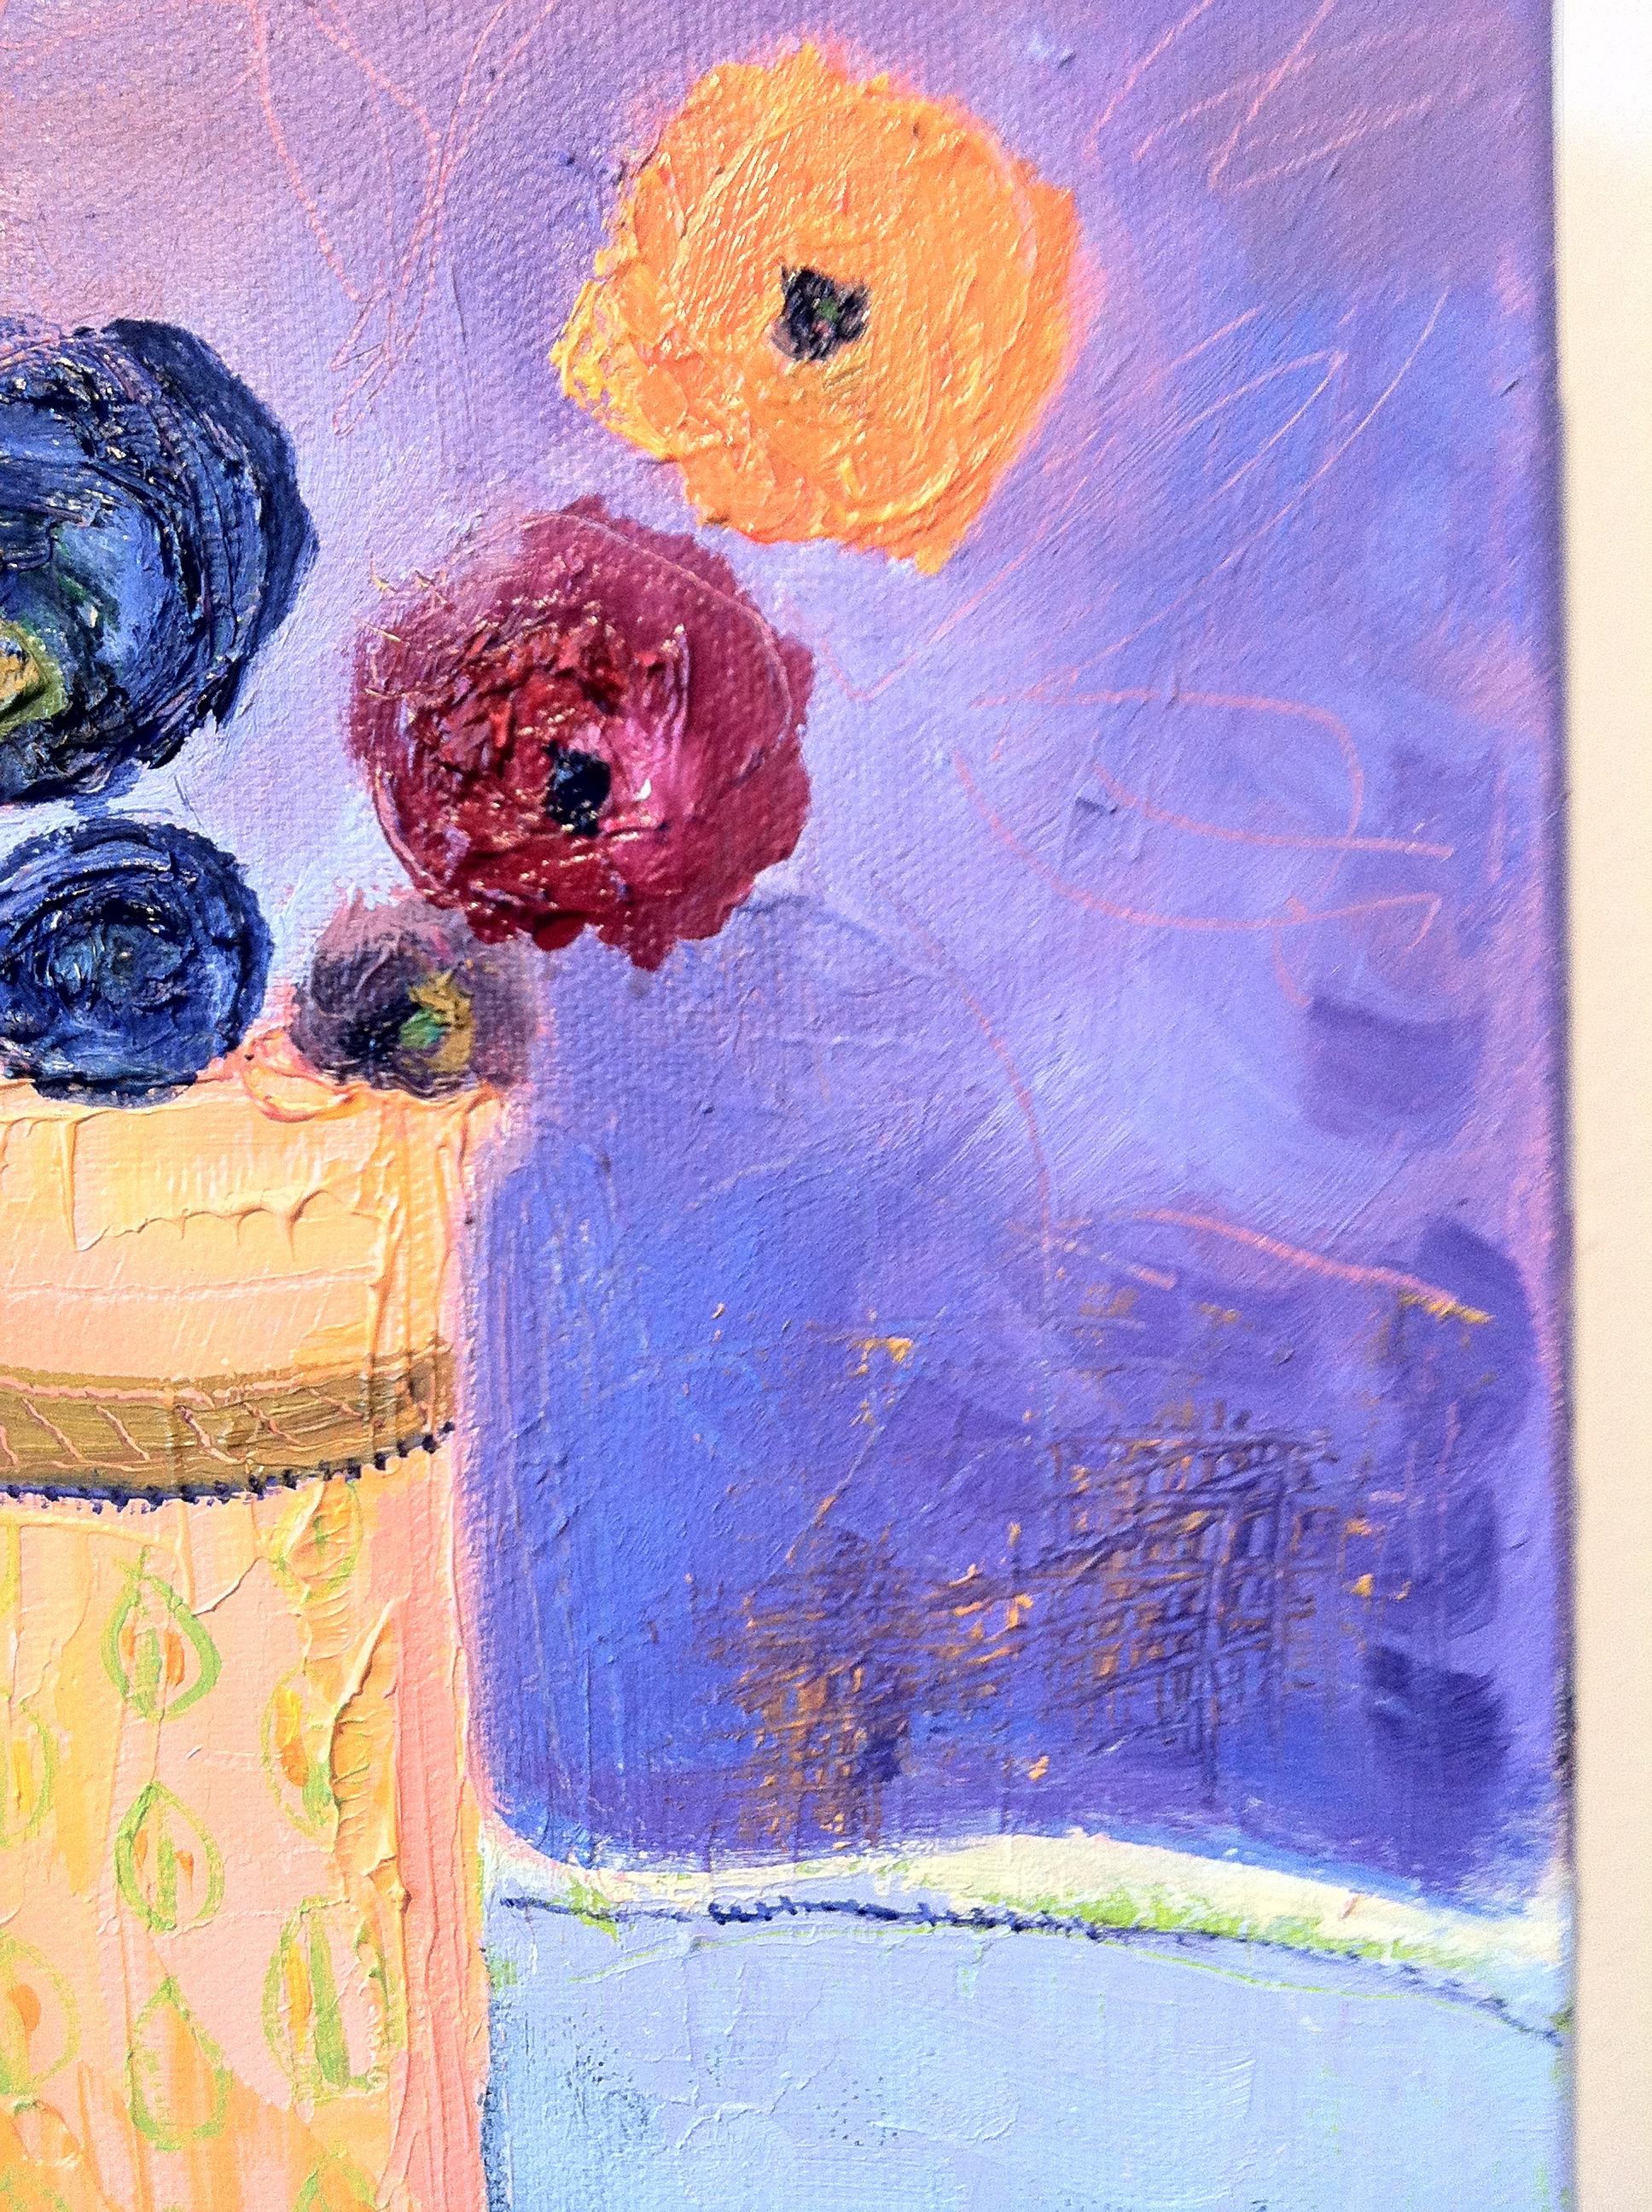 Cette peinture de nature morte sur toile est réalisée à l'huile. Elle se concentre sur une poignée de fleurs, presque abstraites dans leur forme, qui sont maintenues par un vase de couleur abricot. L'interaction entre le fond violet, la nappe bleu